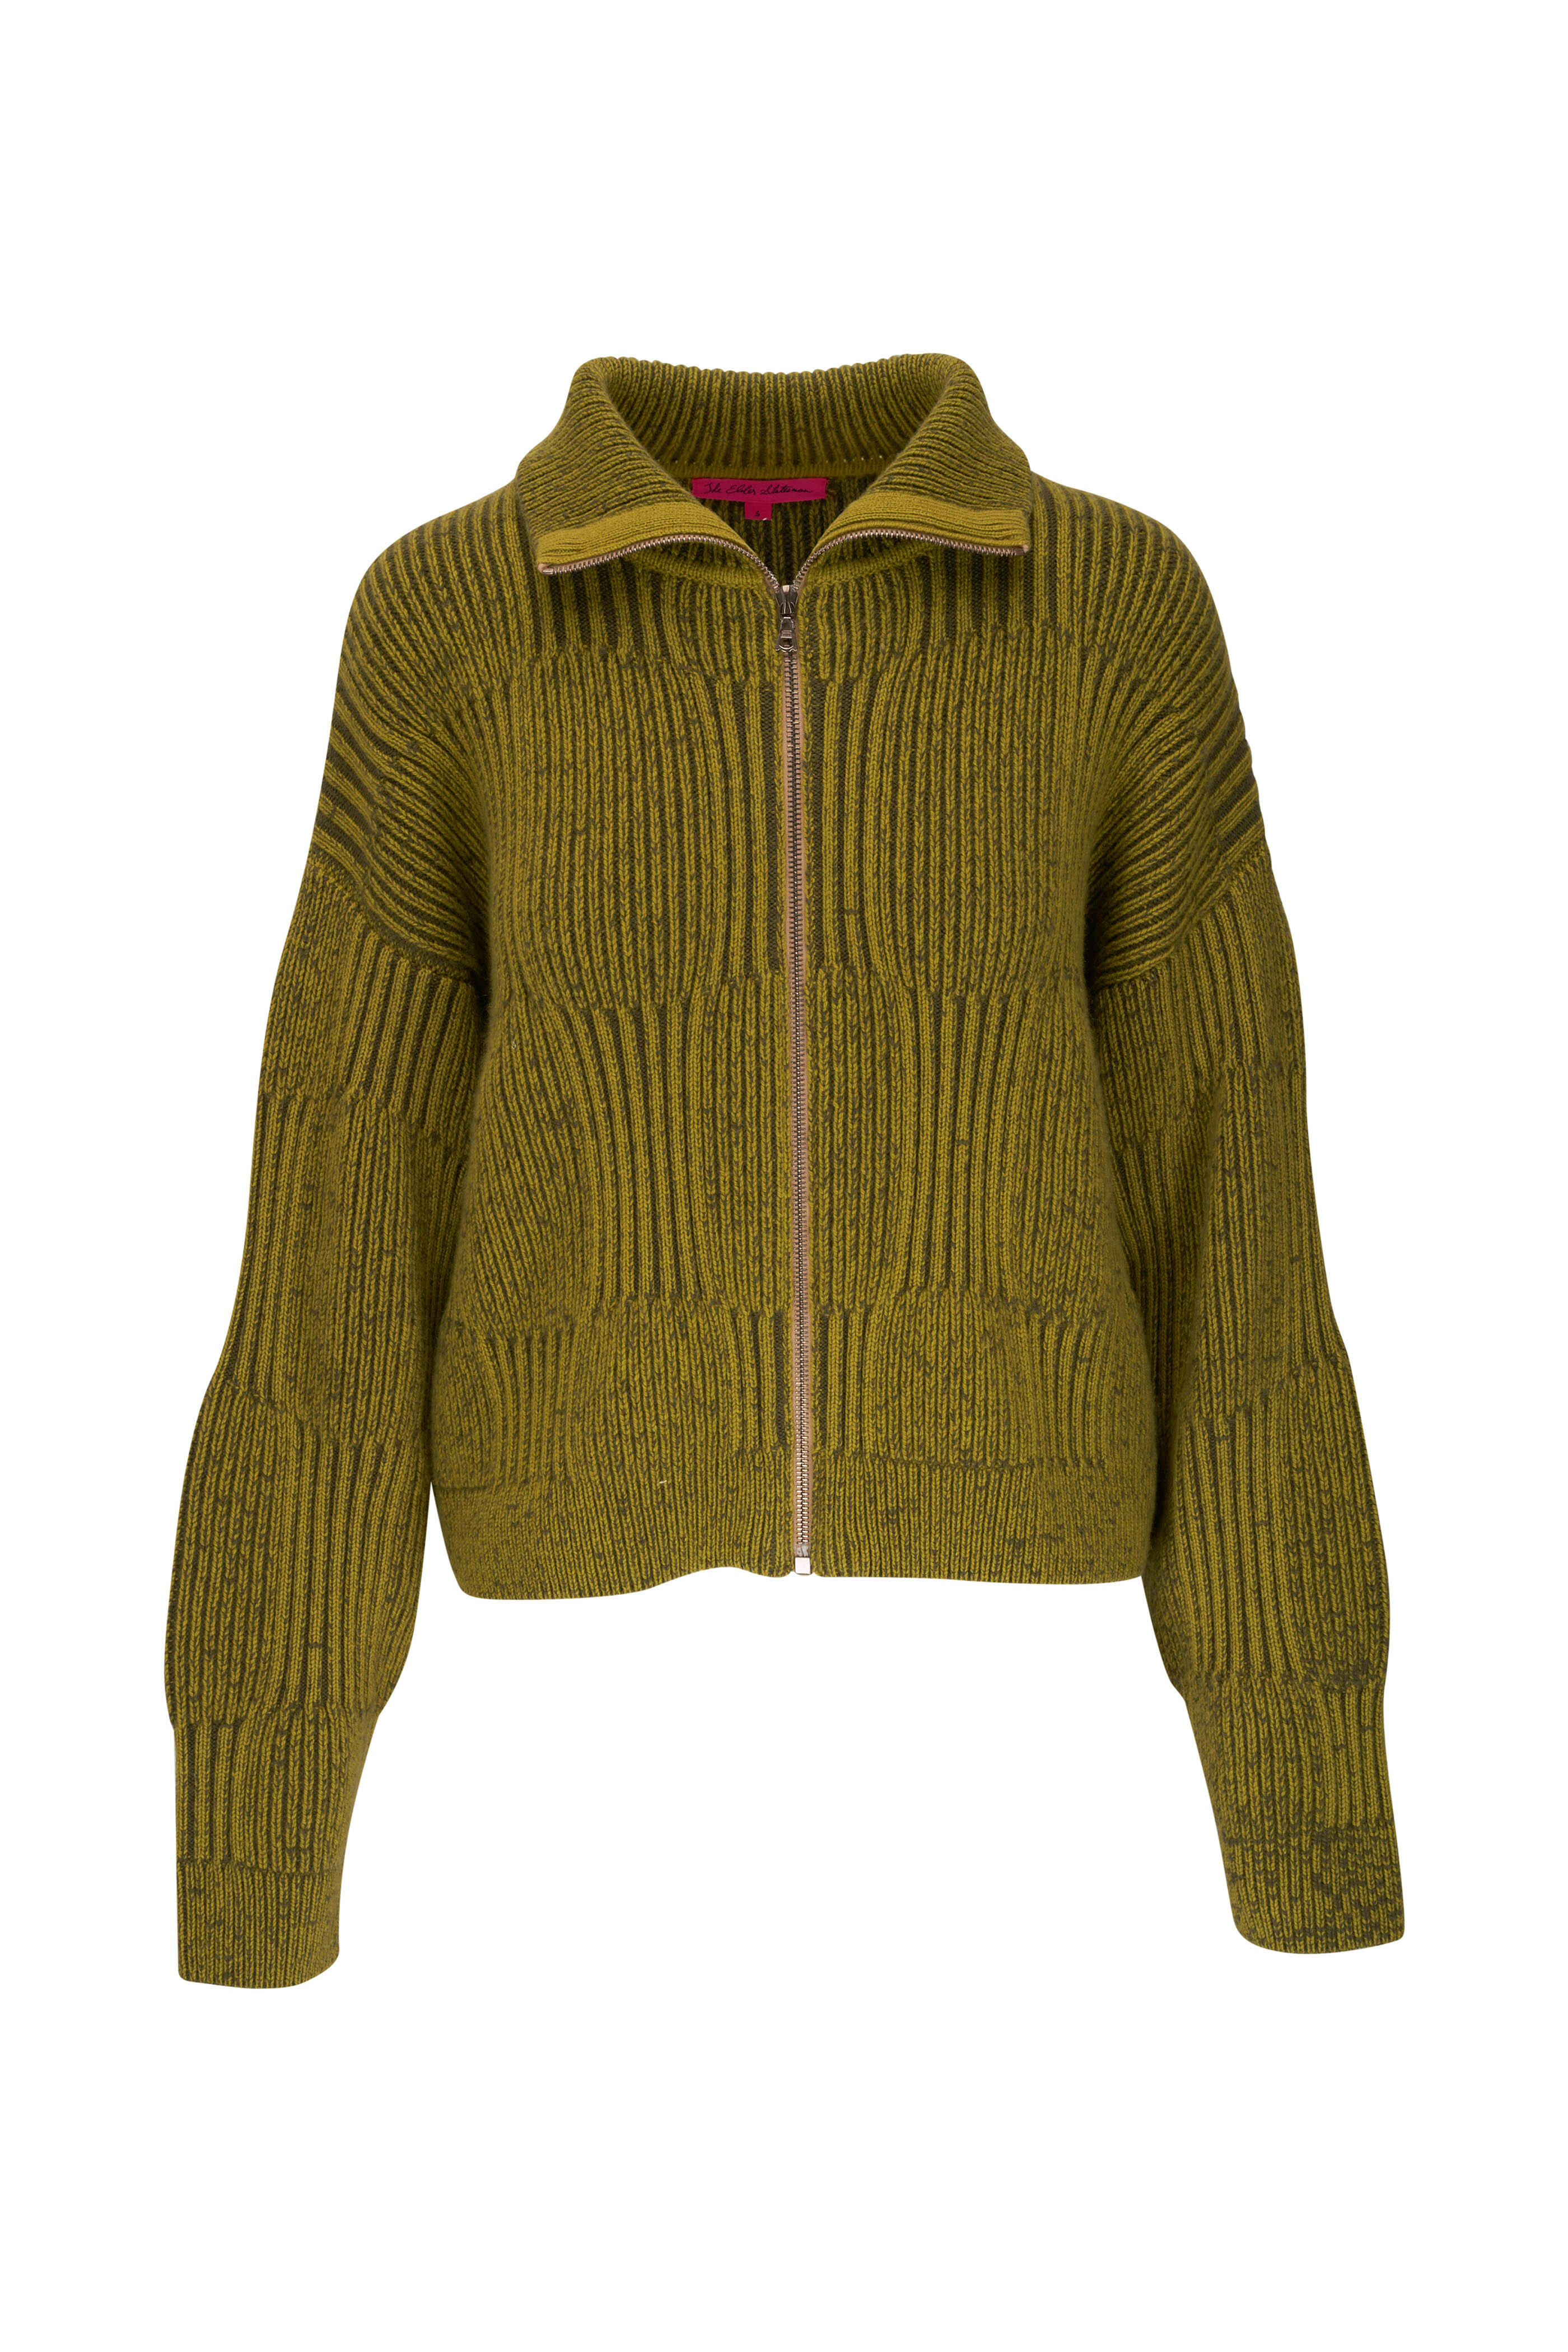 Jacquard Cashmere Sweater in Multicoloured - The Elder Statesman